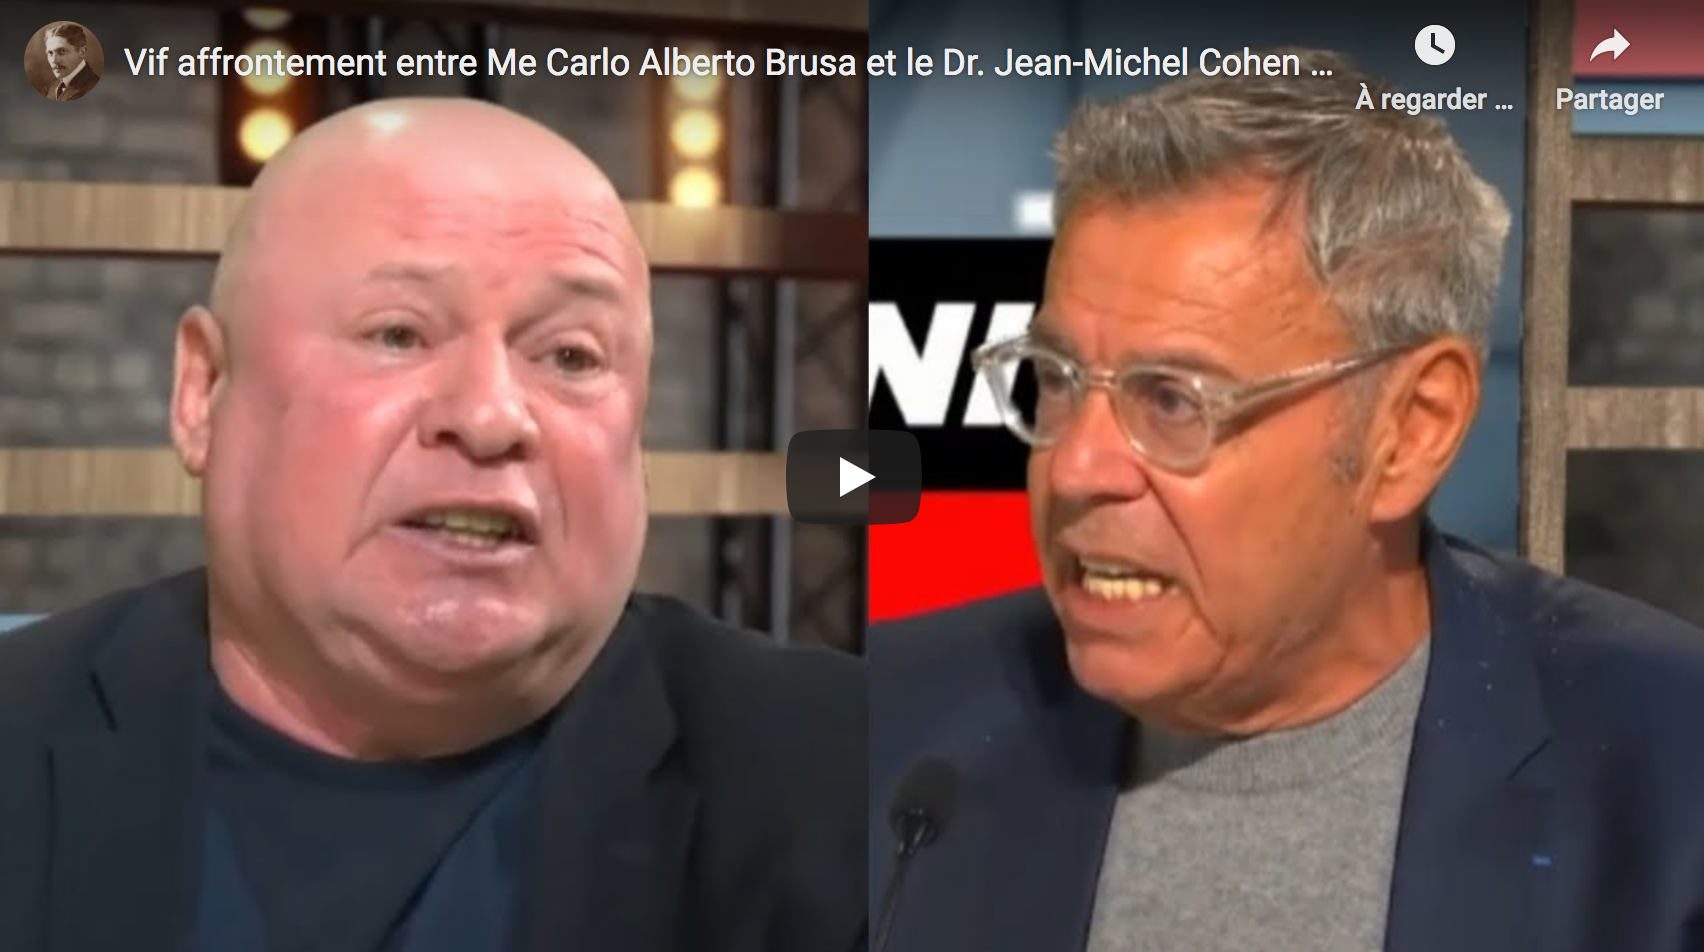 Vif affrontement entre Me Carlo Alberto Brusa et le Dr Jean-Michel Cohen au sujet de la vaccination anti-Covid-19 (DÉBAT)